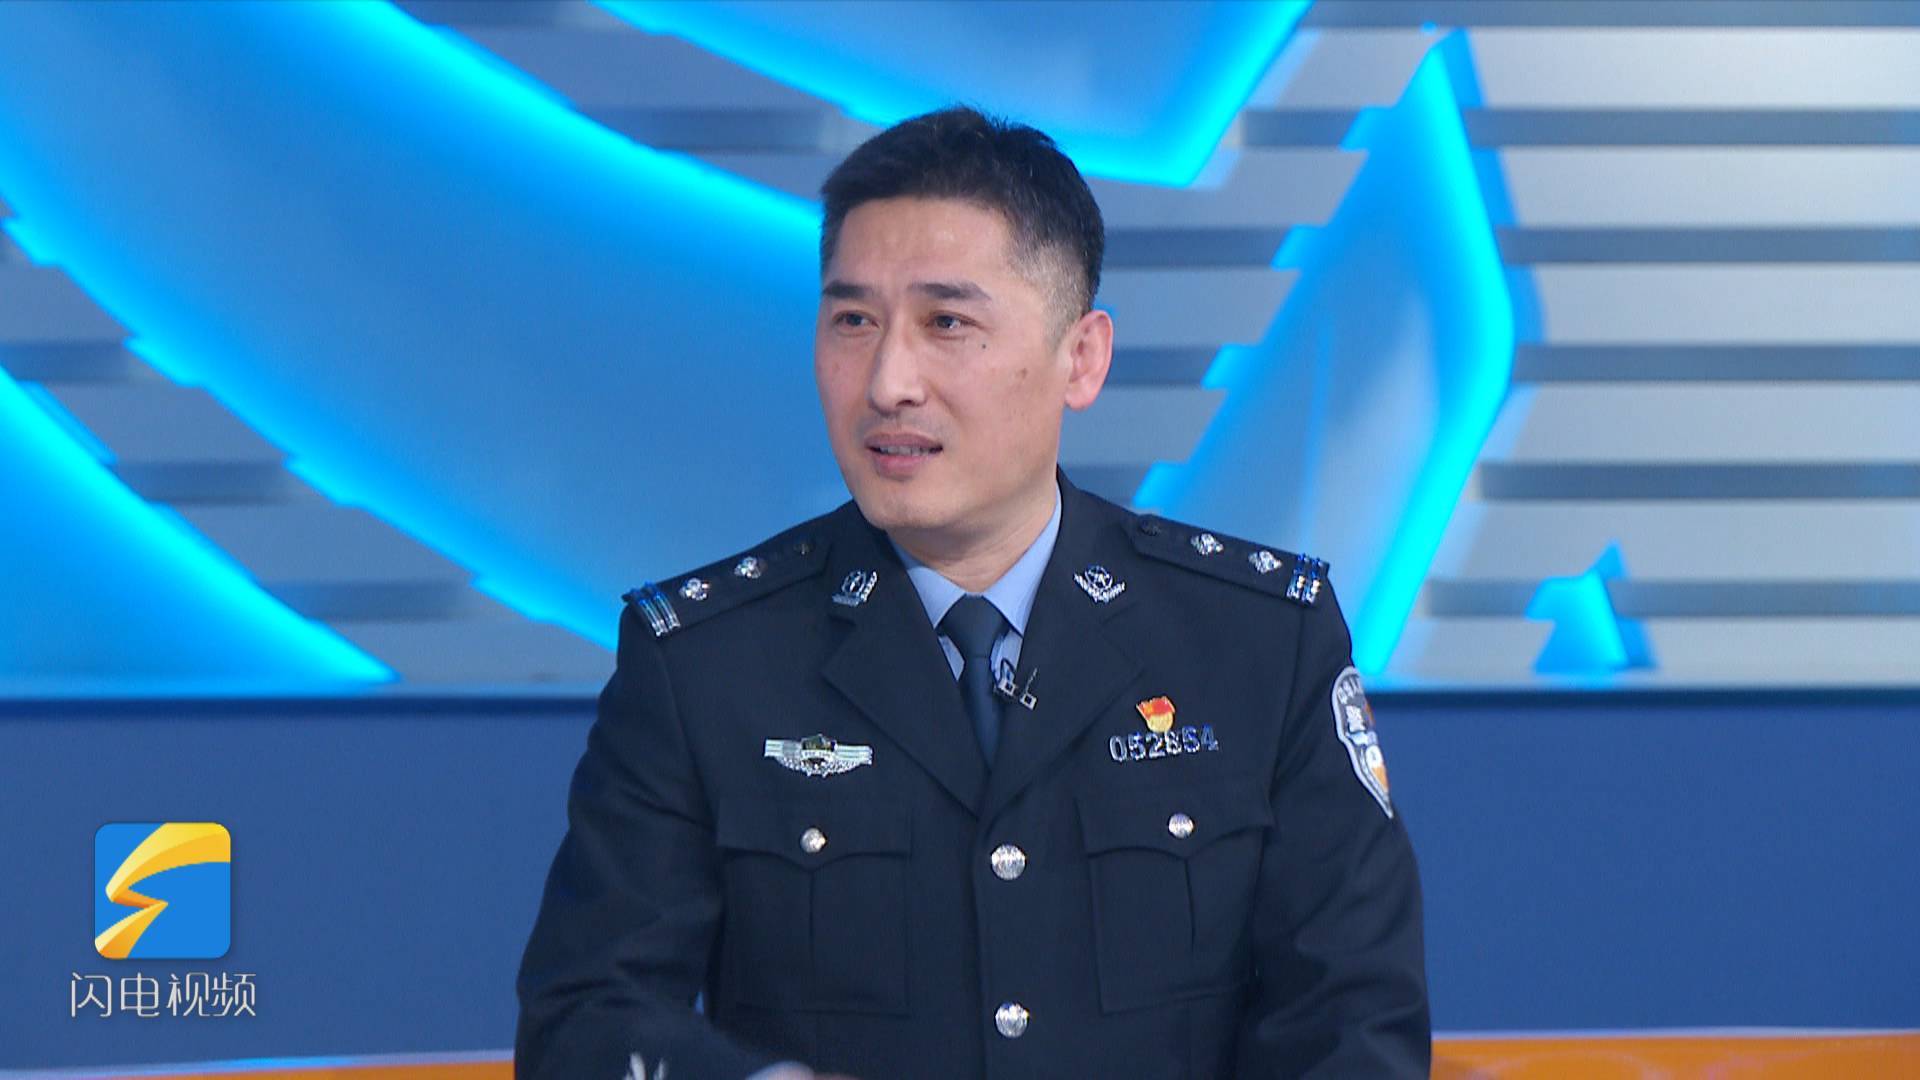 对话劳动者：“网红吴警官”笑谈为录制短视频 曾被爱人多次“批评”